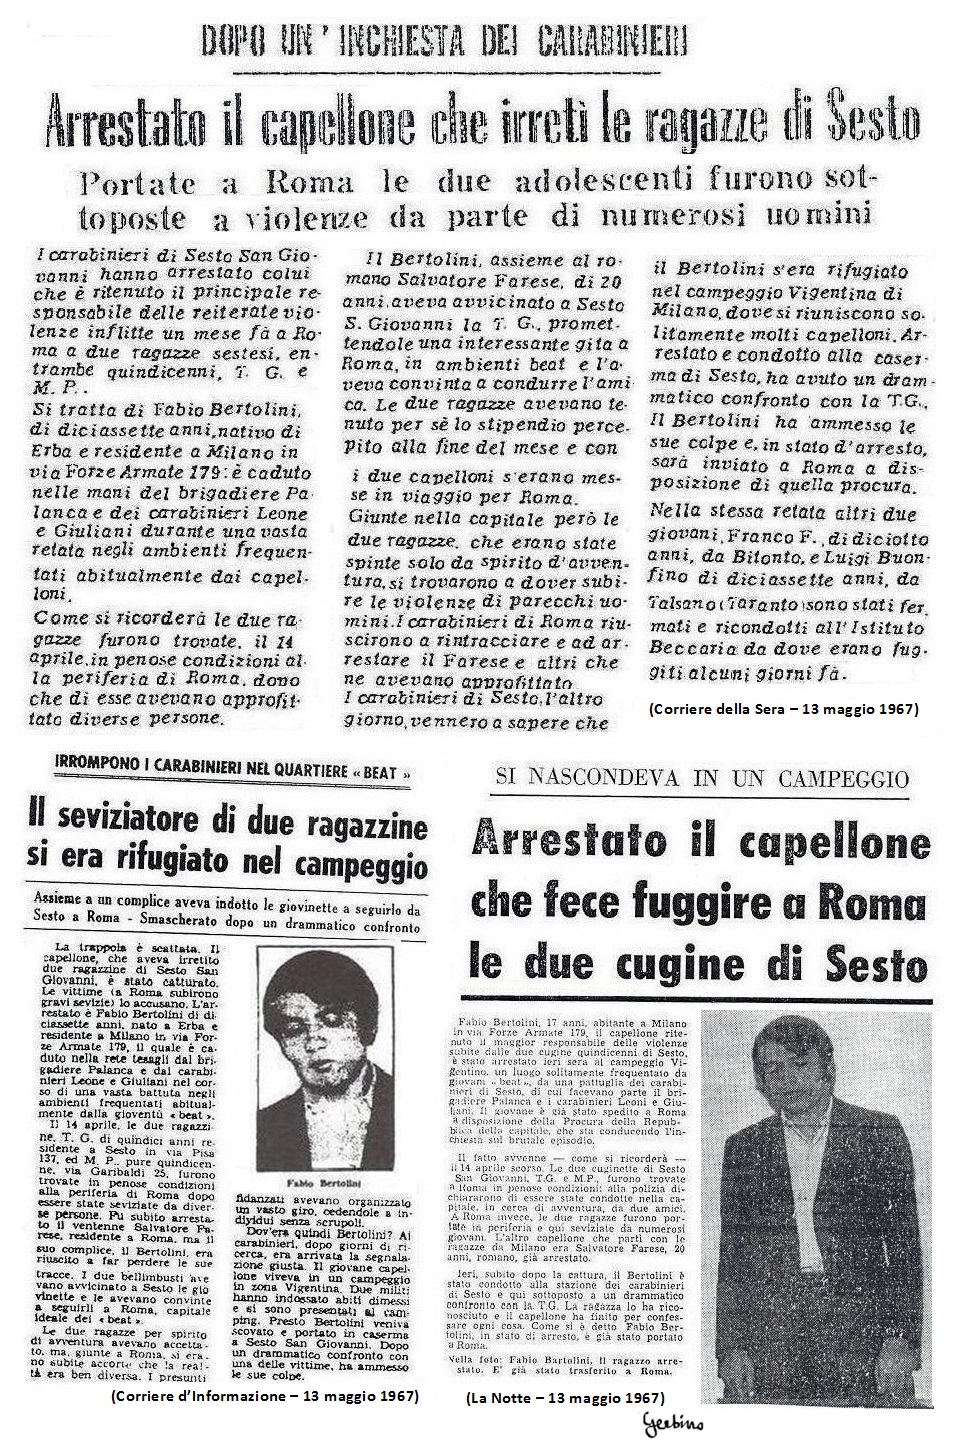  Bertolini era stato arrestato dai carabinieri in un bar del parco del Castello Sforzesco e non nella tendopoli di Mondo Beat.